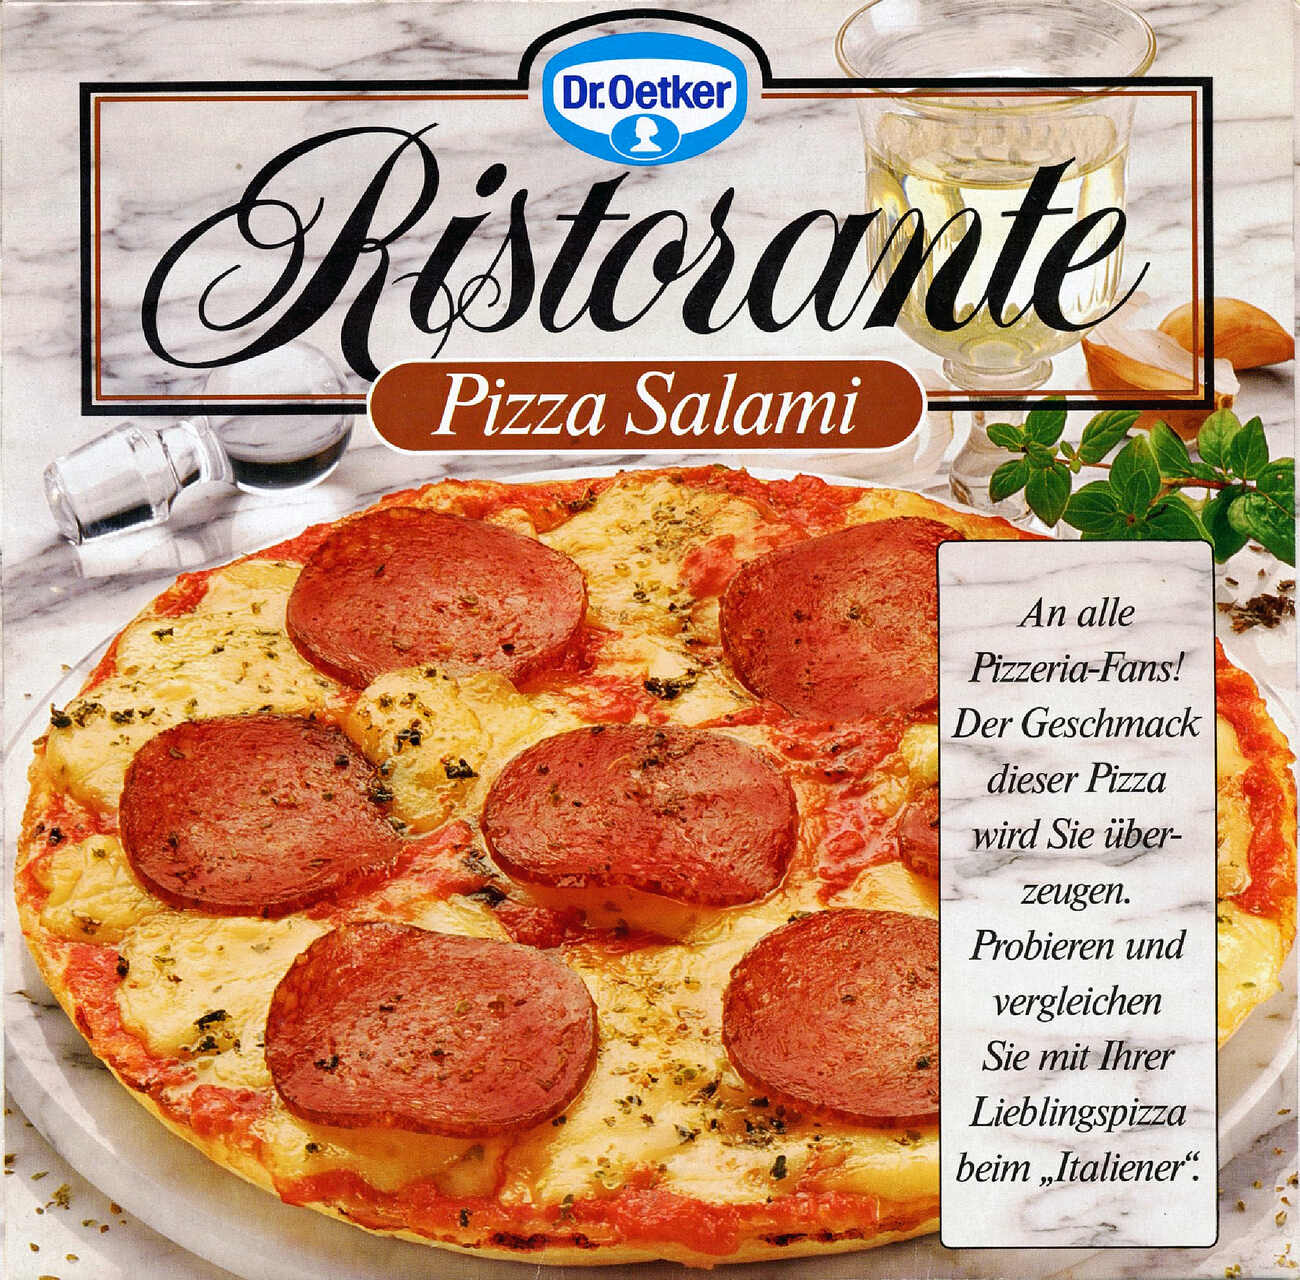 Surgelazione: pizza Salami della linea Ristorante nel 1985 della Dr.Oetker